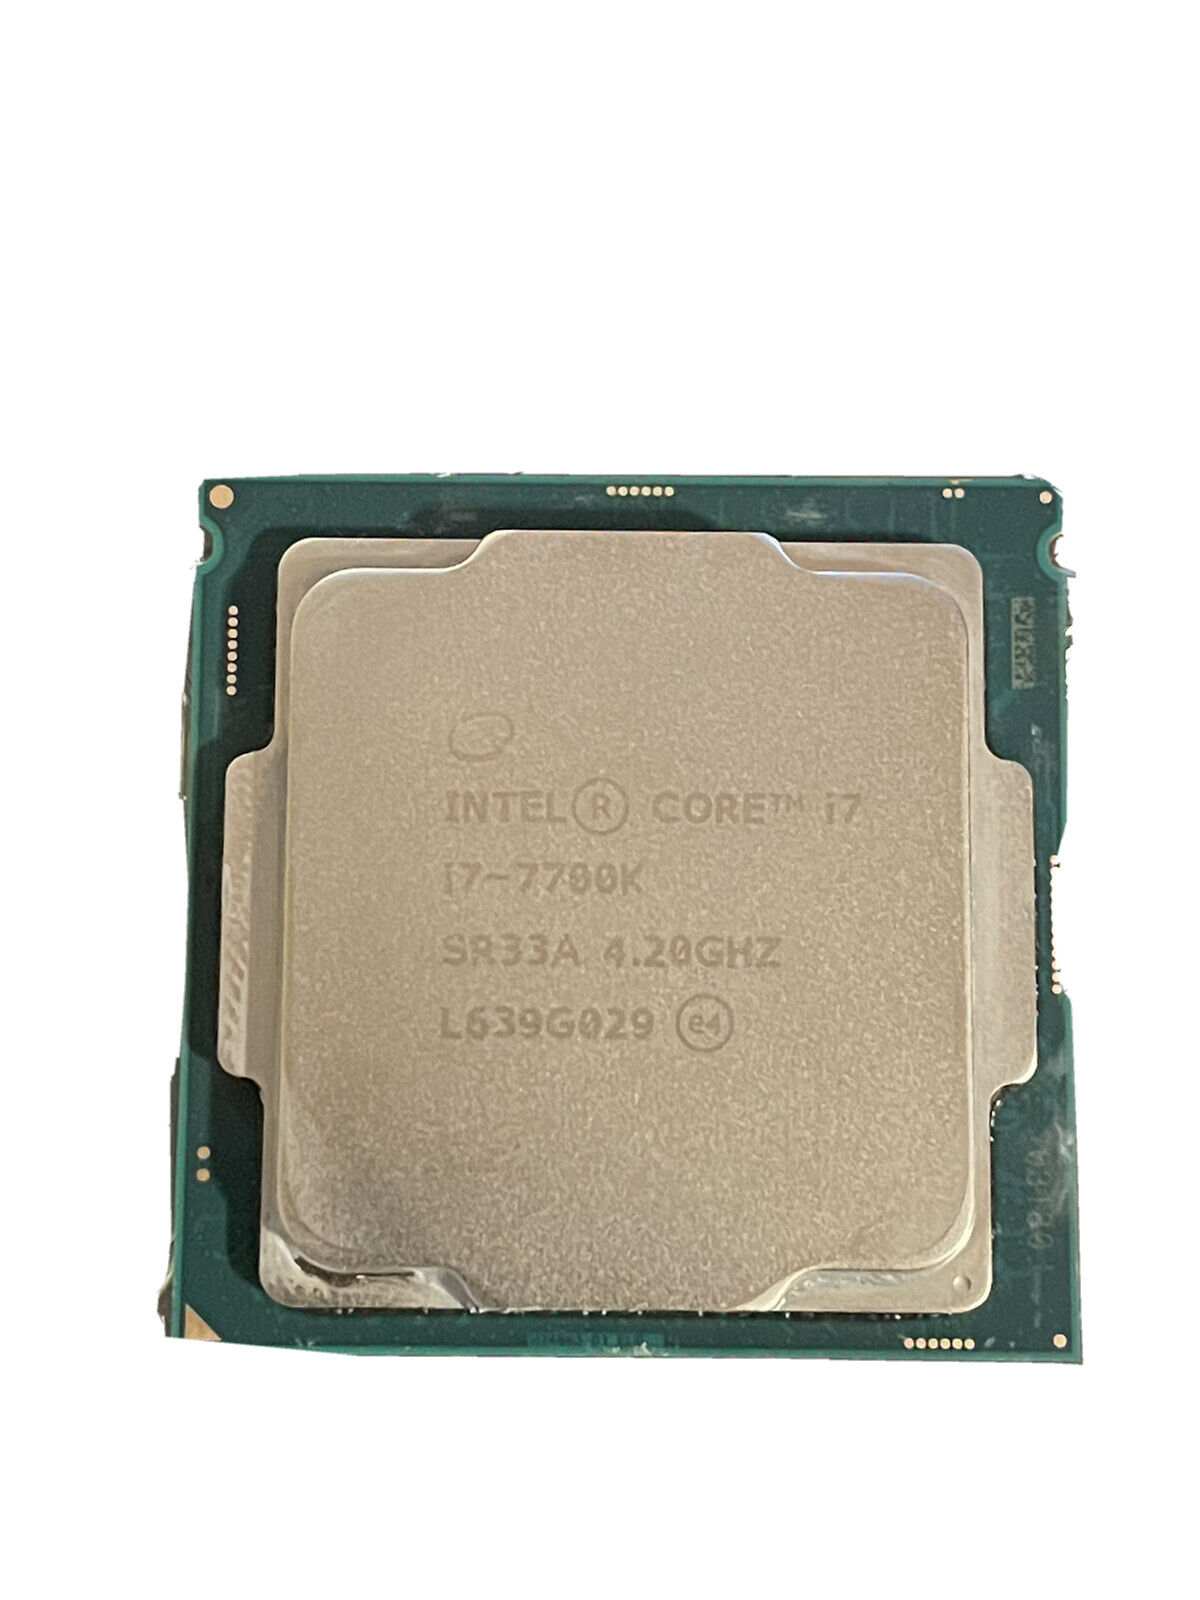 Intel Core i7 7700K 4.2 GHz Quad-Core (BXC80677I77700K) Processor